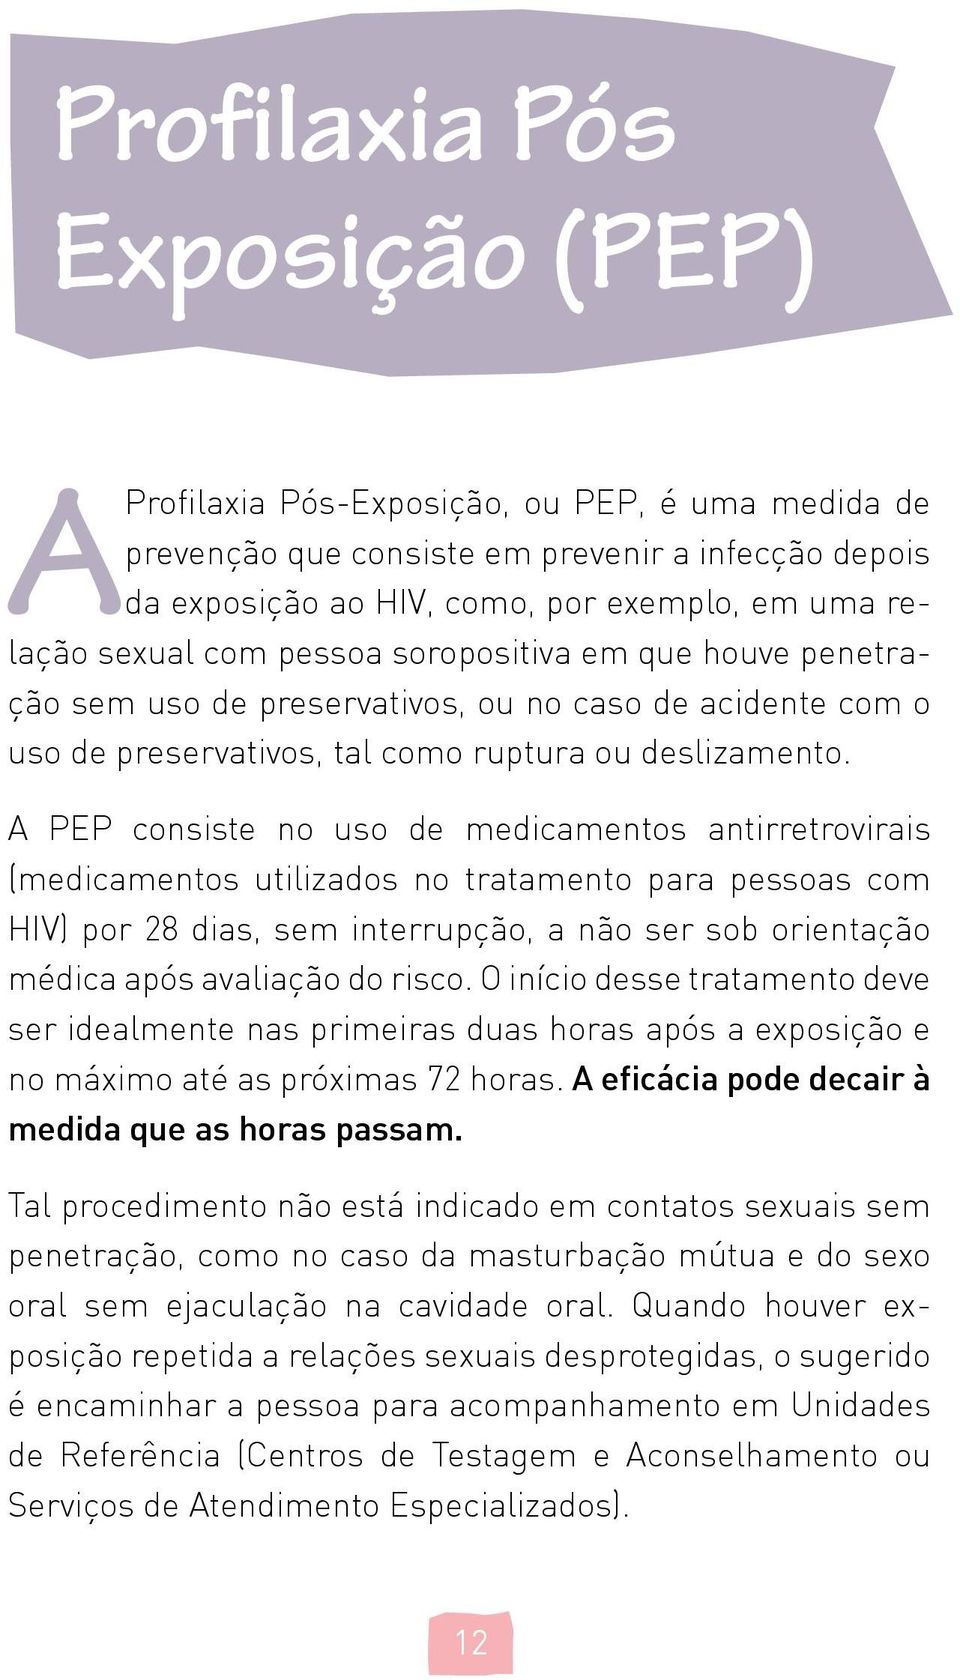 A PEP consiste no uso de medicamentos antirretrovirais (medicamentos utilizados no tratamento para pessoas com HIV) por 28 dias, sem interrupção, a não ser sob orientação médica após avaliação do